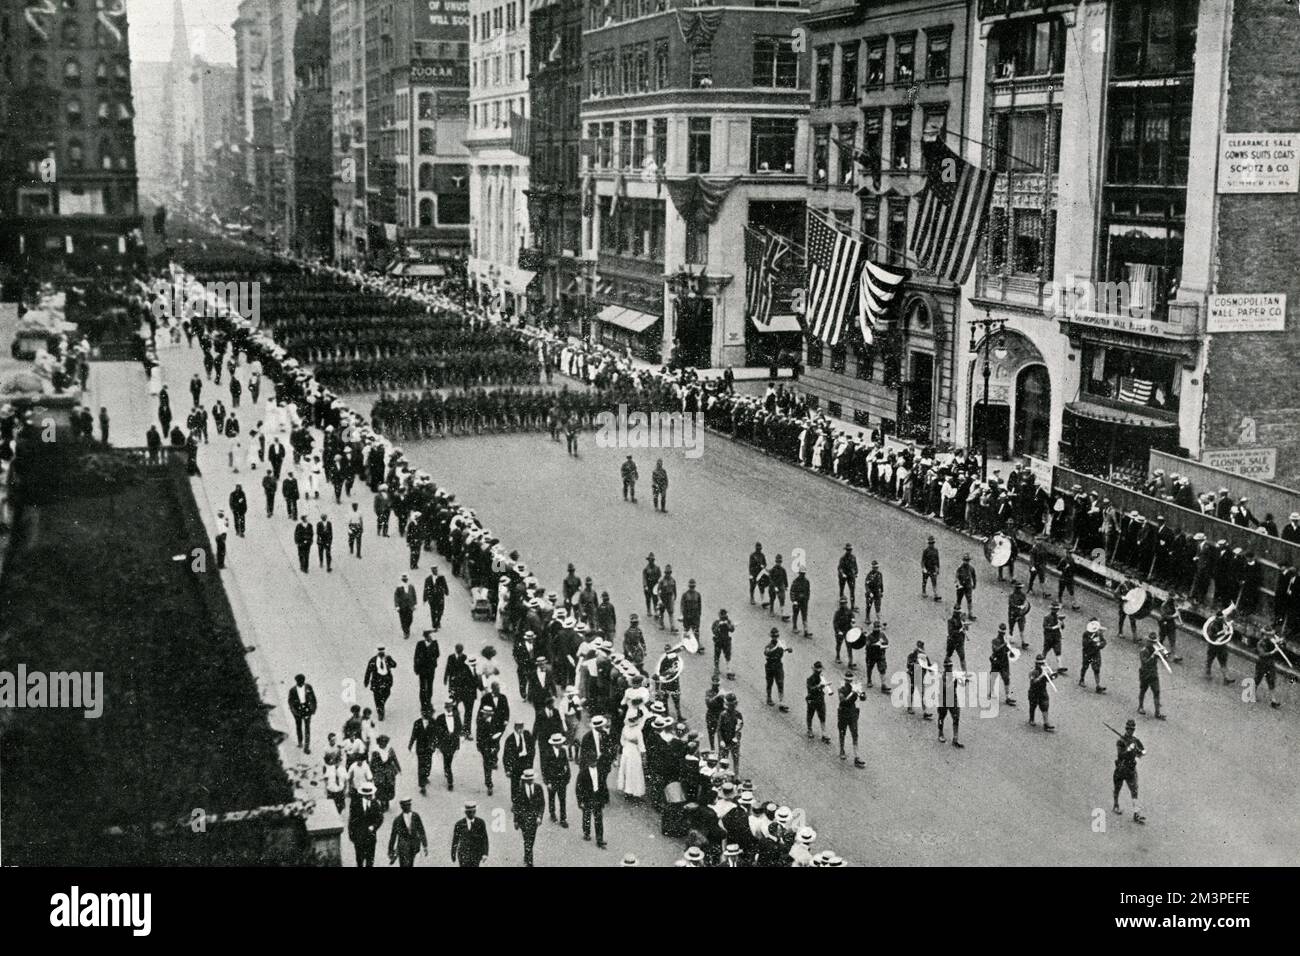 WW1 - Las tropas americanas desfilan a través de Nueva York antes de su salida para la guerra en Francia. Una banda de bronce conduce la formación a través de las calles de la ciudad. Los ciudadanos americanos se detienen para ver la procesión. Fecha: 1917 Foto de stock